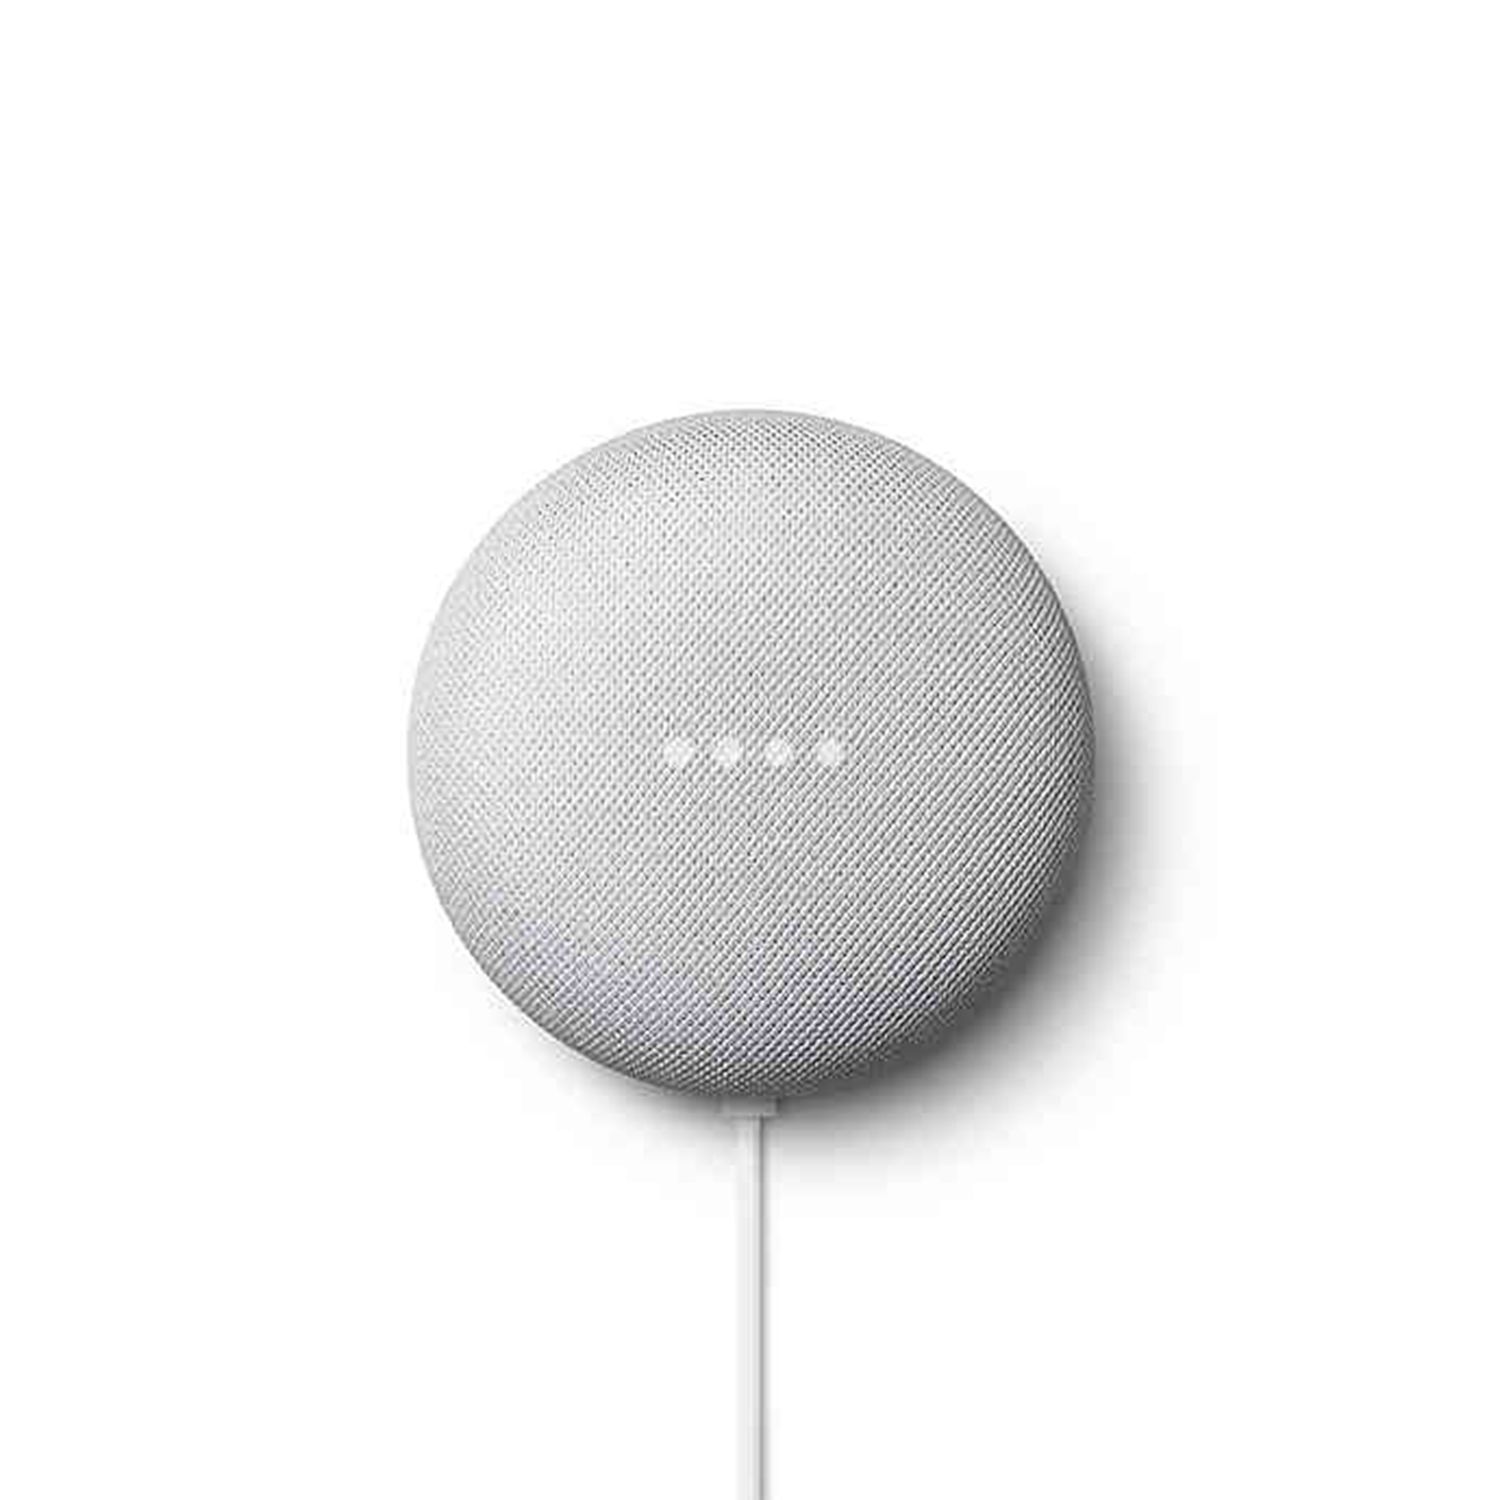 მე ჩემს Google Home- ს ვიყენებ, როგორც თეთრი ხმაურის აპარატი და უკეთესს არასდროს მიძინია